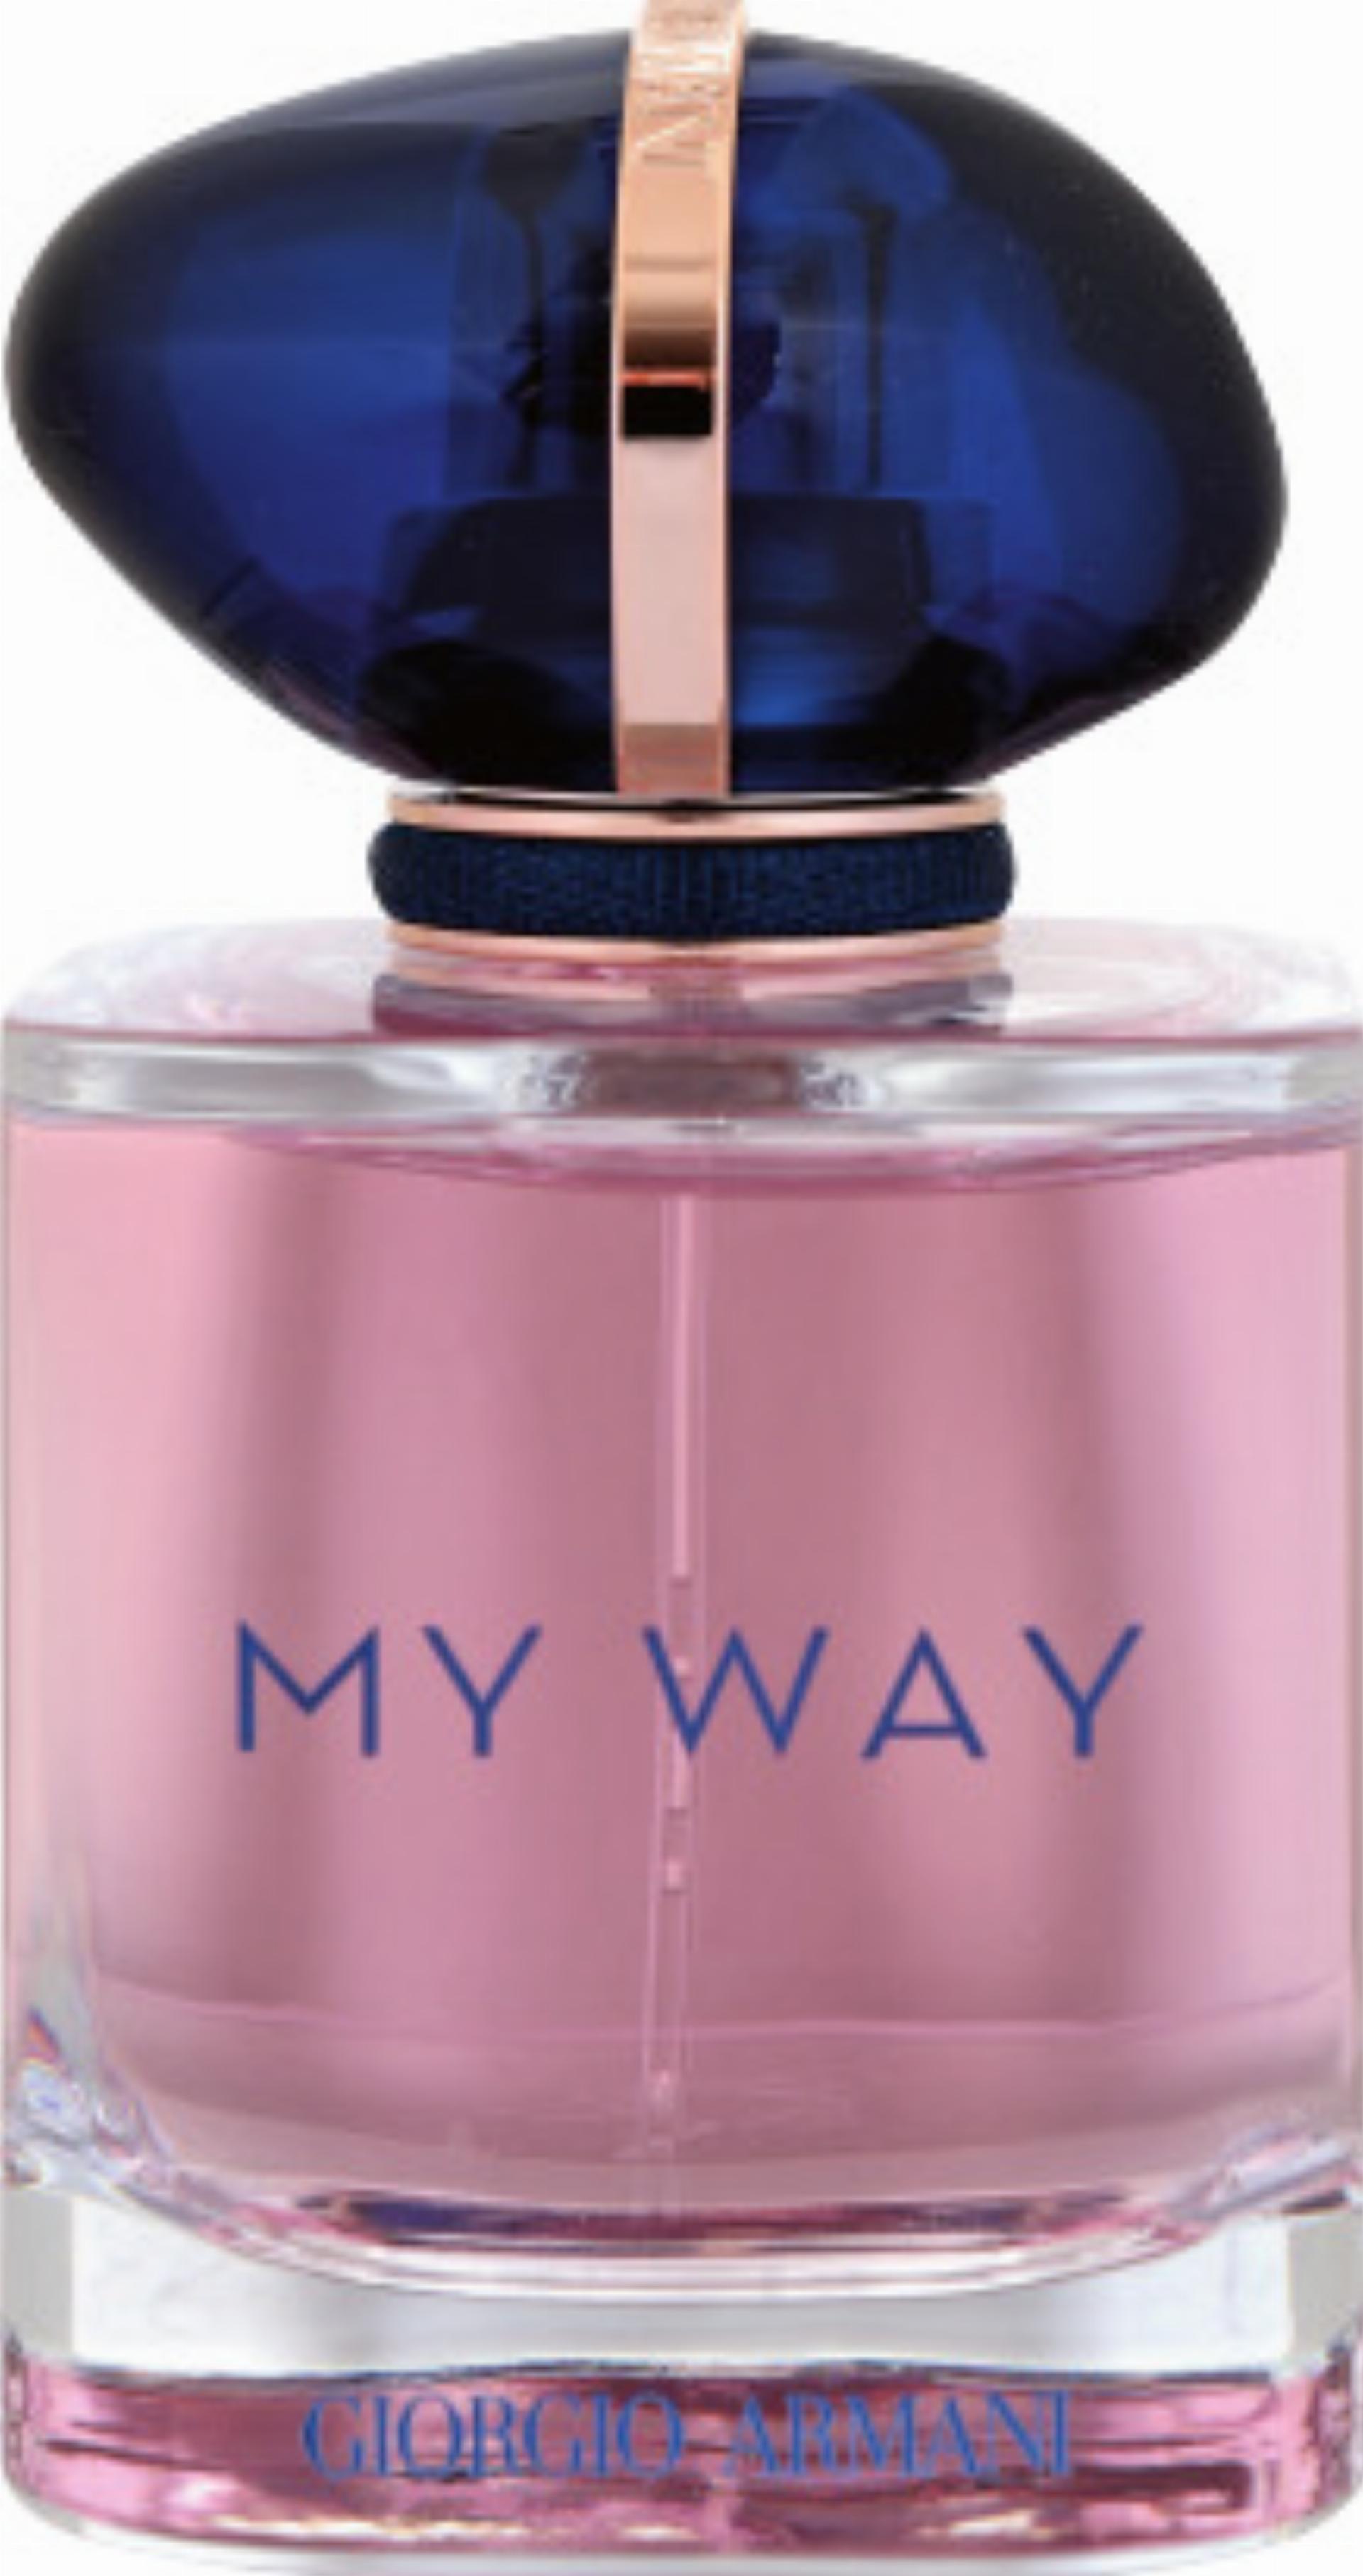 «Giorgio Armani My Way EdP 50 ml» gibt‘s bei Otto’s deutlich günstiger als bei den meisten bekannten Parfümanbietern. Foto: zVg